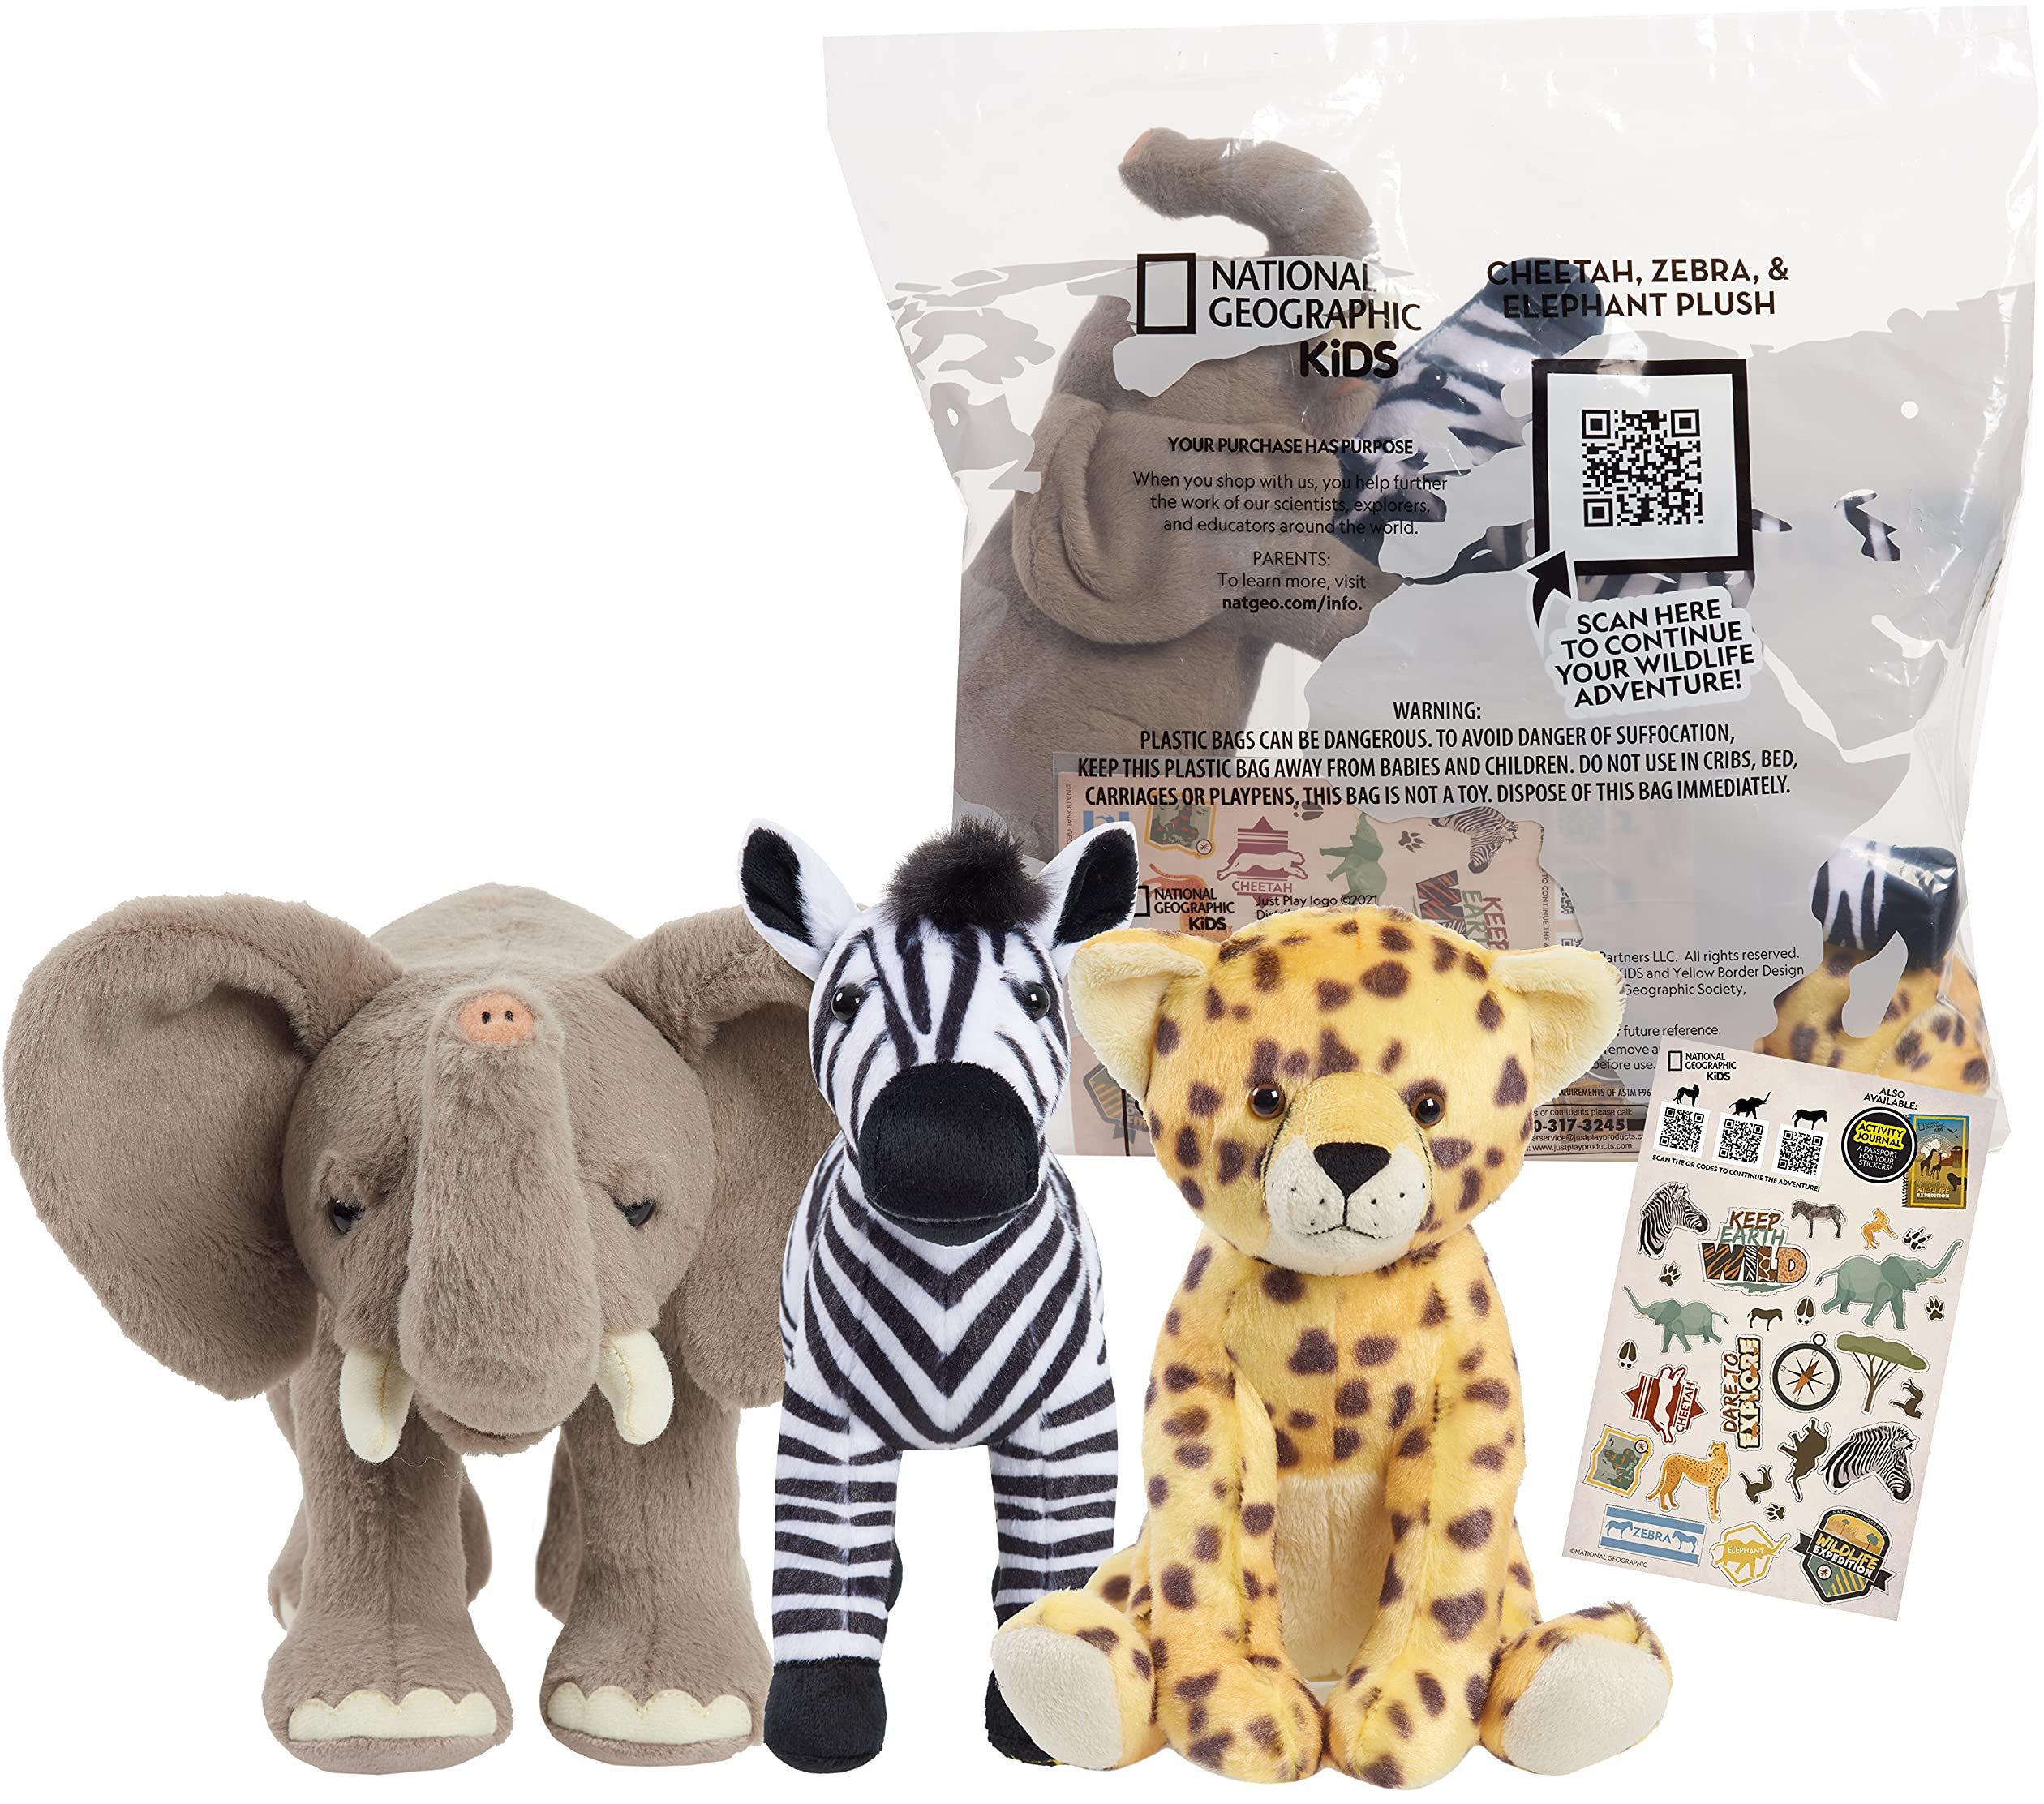 Детская упаковка из 3 гиперреалистичных супермягких чучел животных, QR-код для слона, гепарда, фактов о зебре, упаковка из переработанных материалов, от Just Play National Geographic